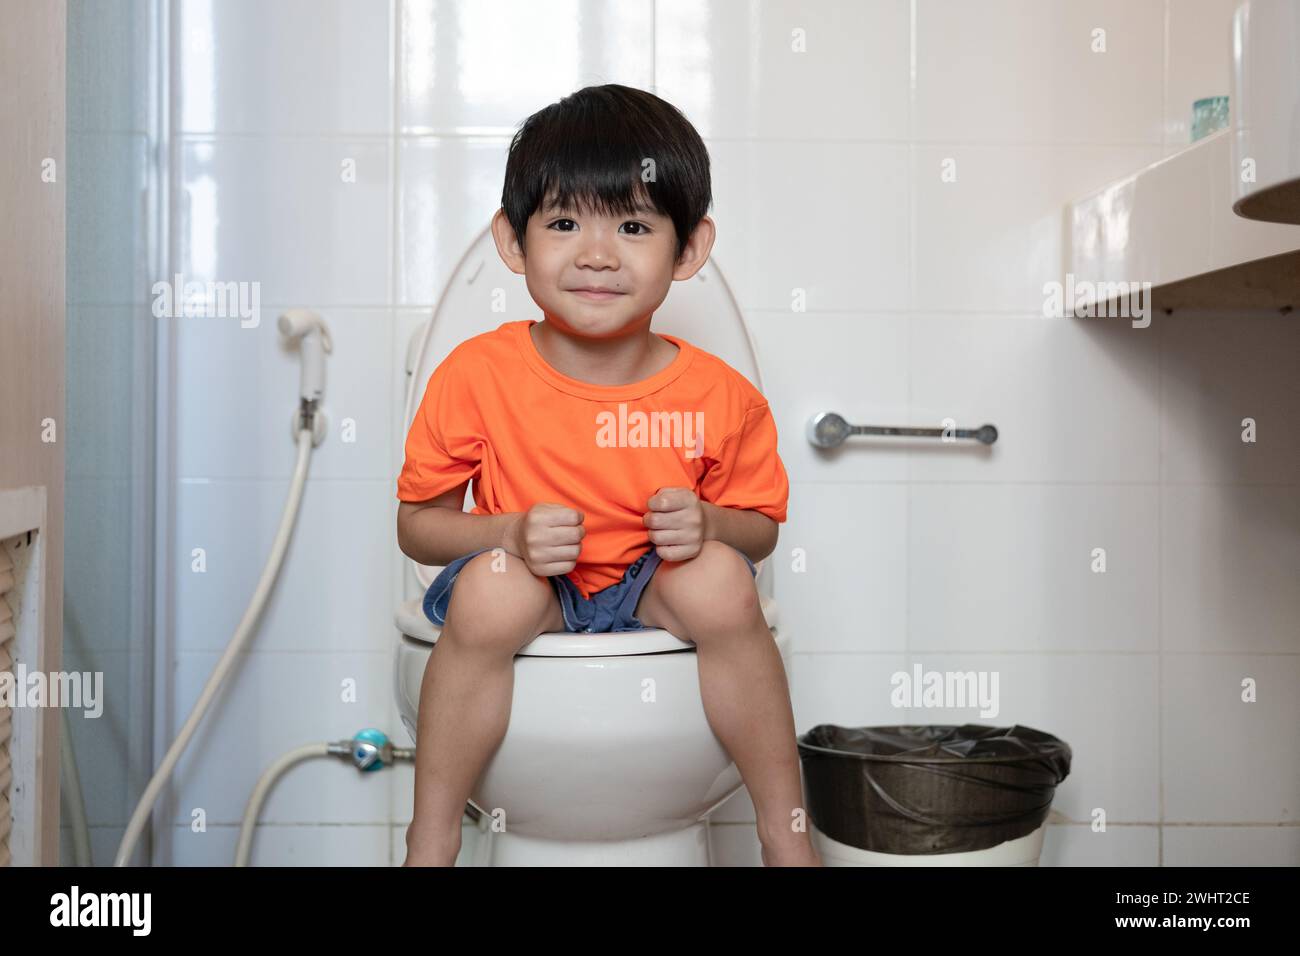 Asian boy Sitting on the toilet bowl Stock Photo